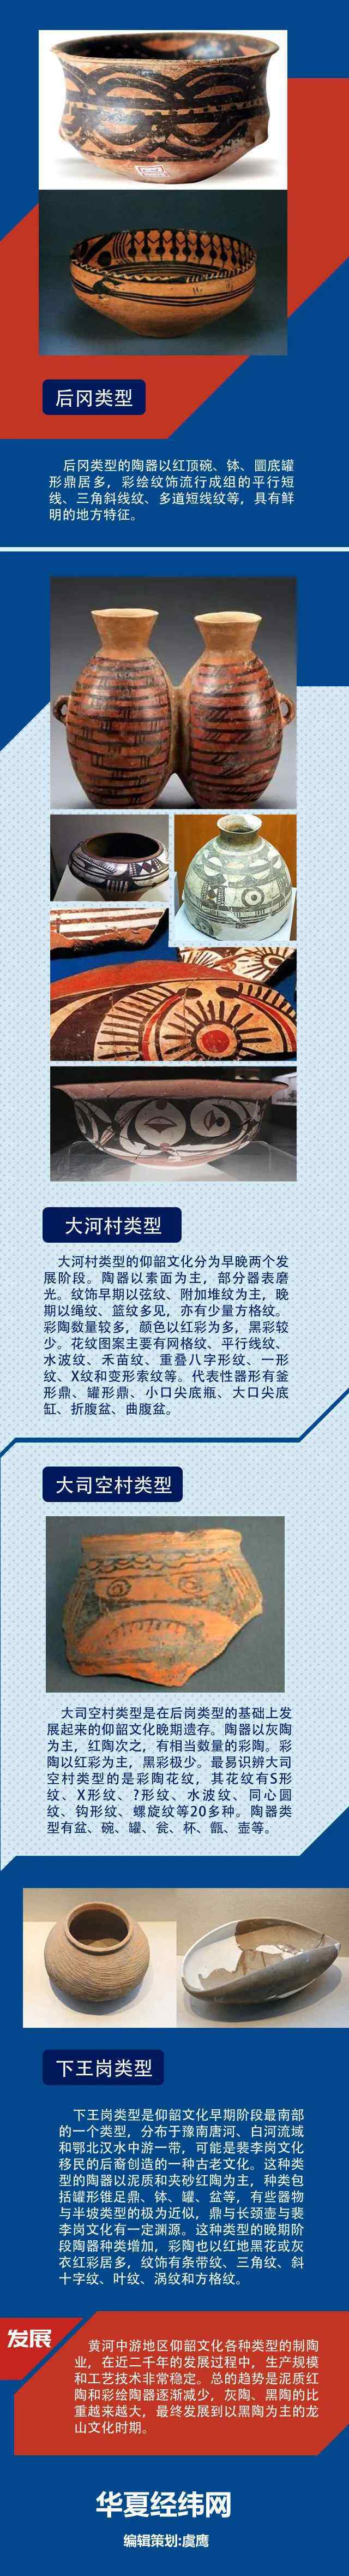 仰韶文化彩陶 看看新石器时代仰韶文化的彩陶有多精美